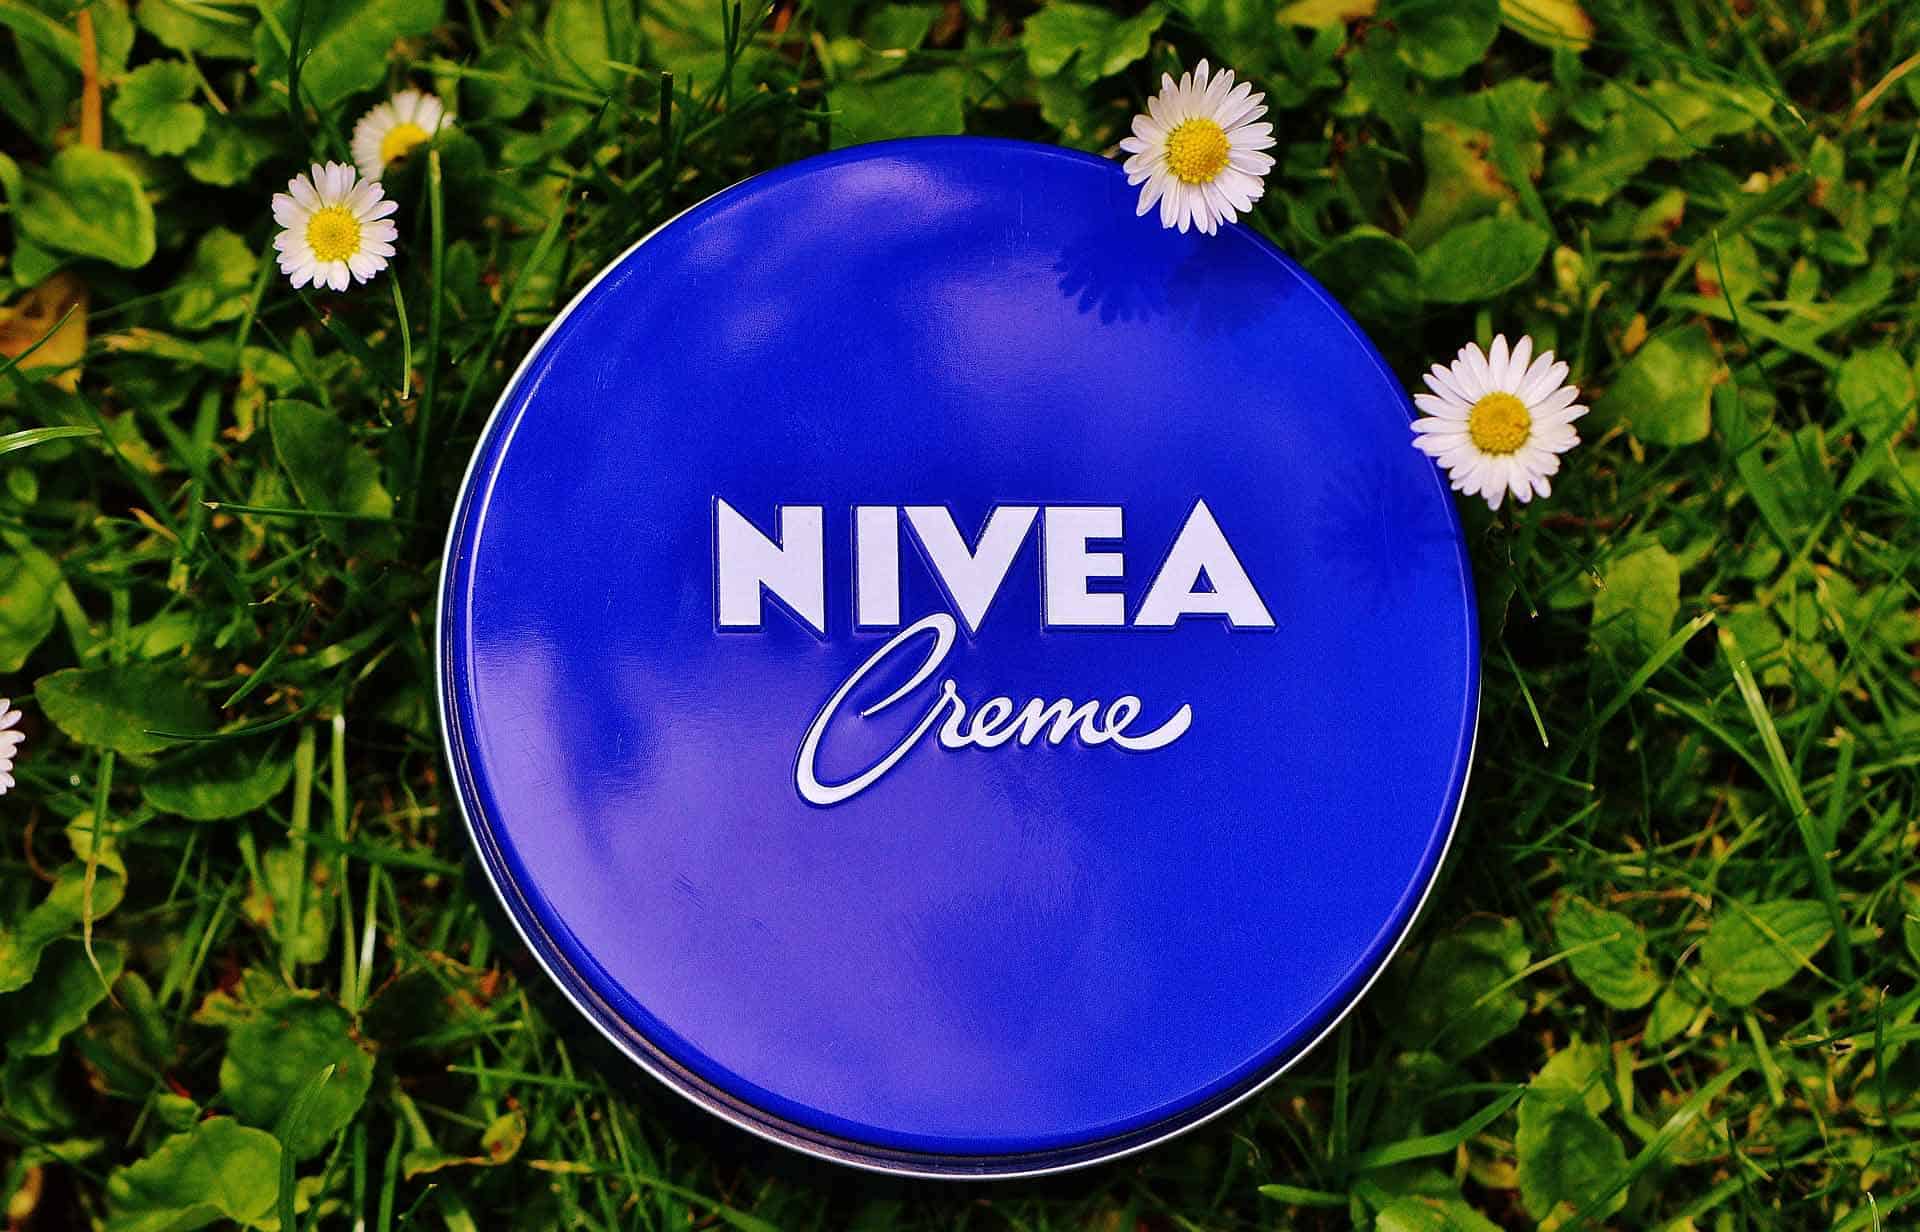 nivea cream on grass